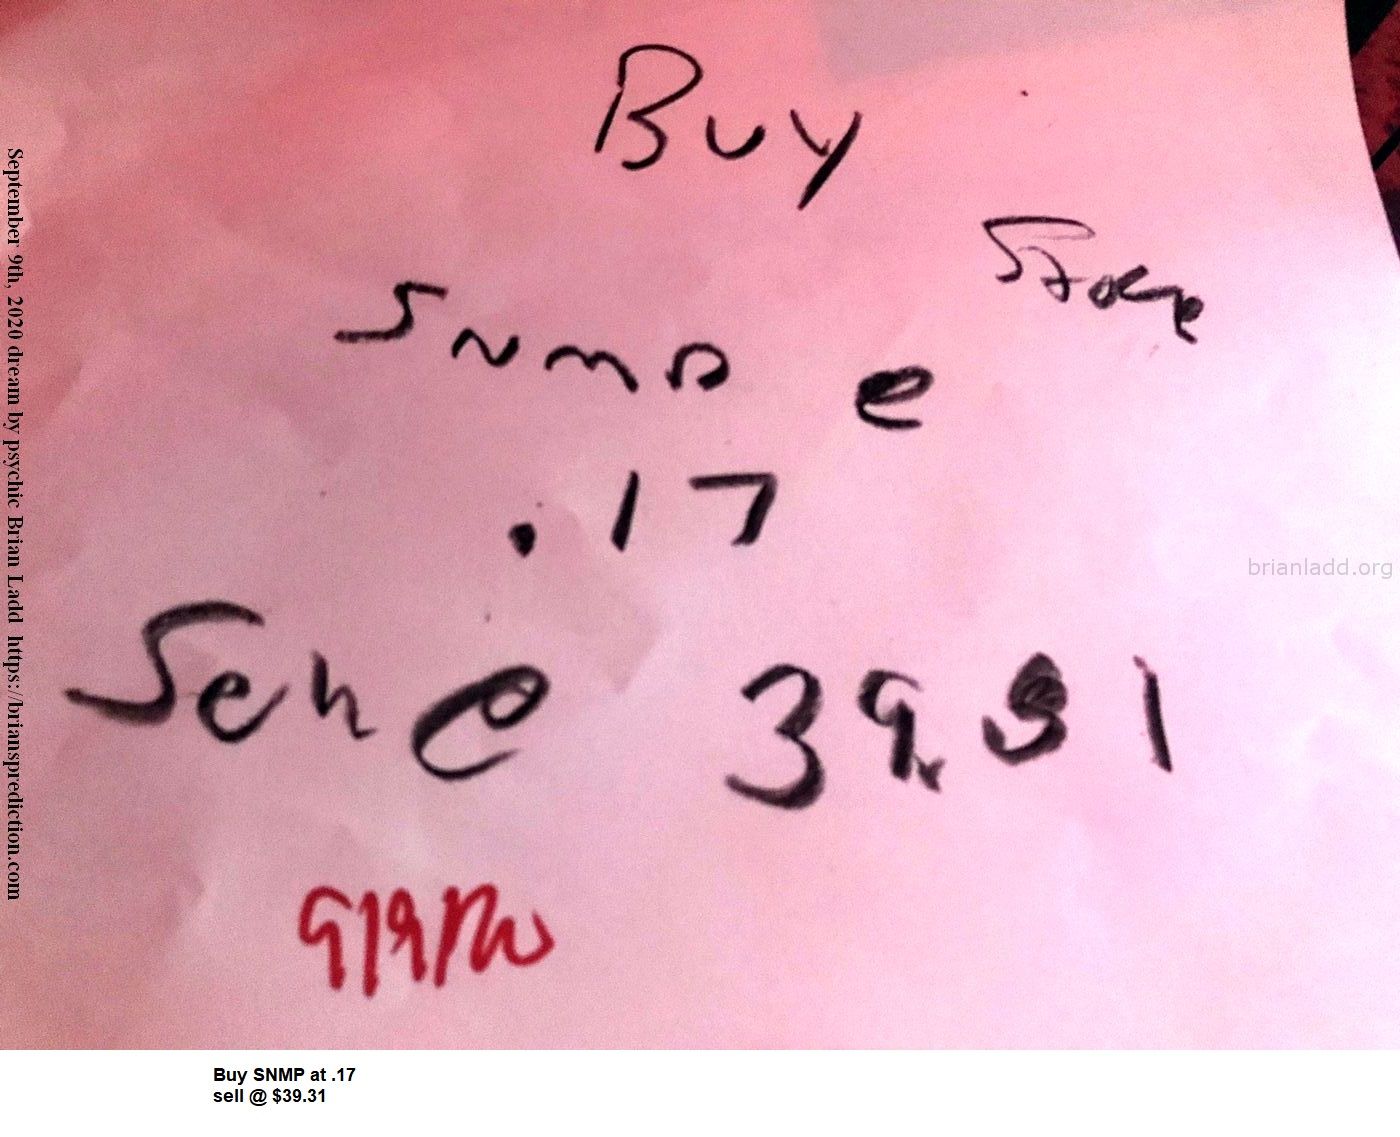 13584 9 September 2020 4 - Buy Snmp At .17 Sell @ $39.31...
Buy Snmp At .17 Sell @ $39.31
